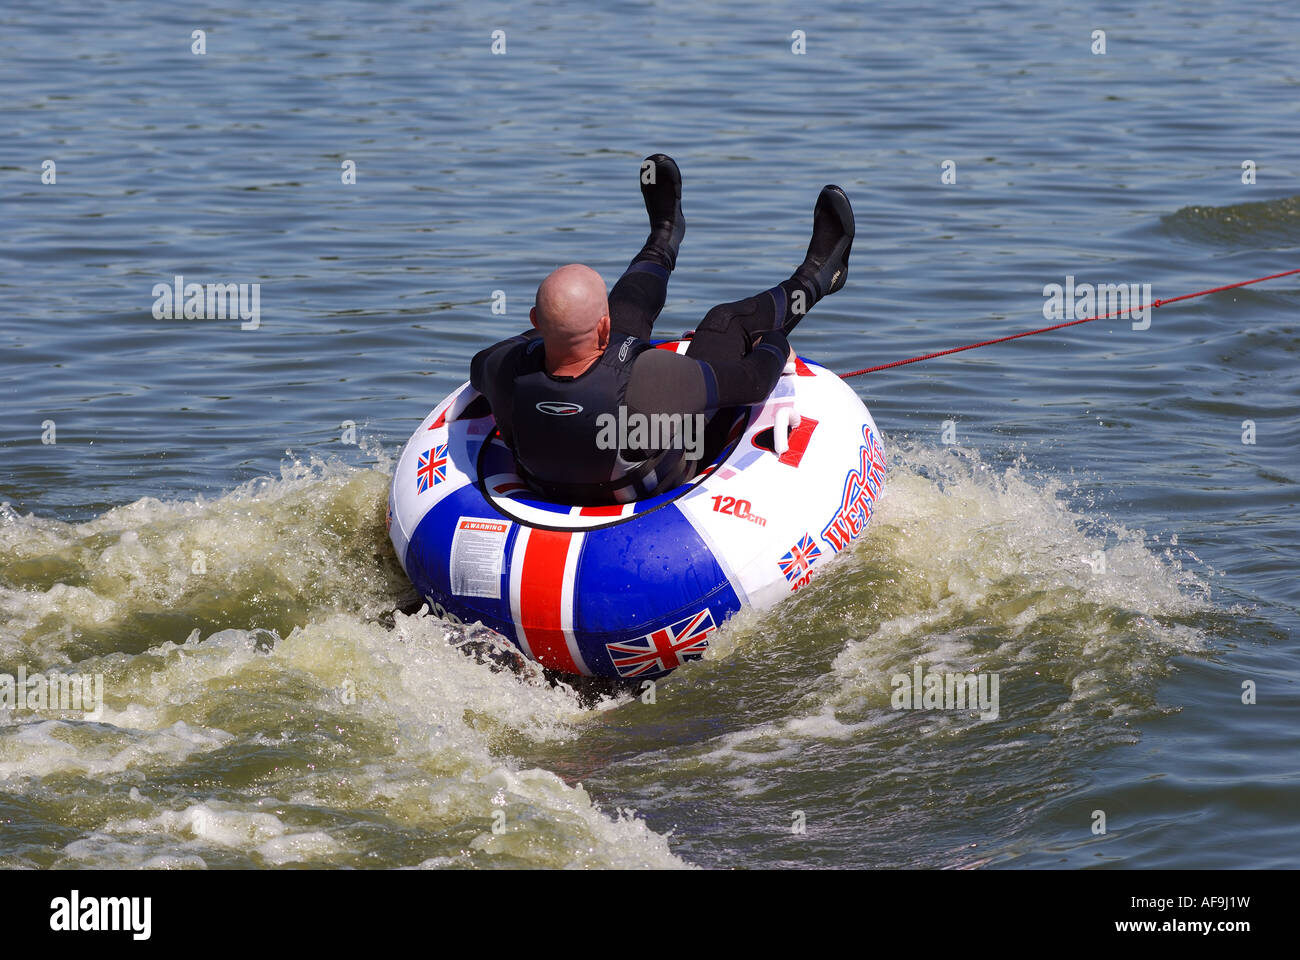 L'uomo sul gommone trainato da jet ski a Kingsbury Water Park, Warwickshire, Inghilterra, Regno Unito Foto Stock